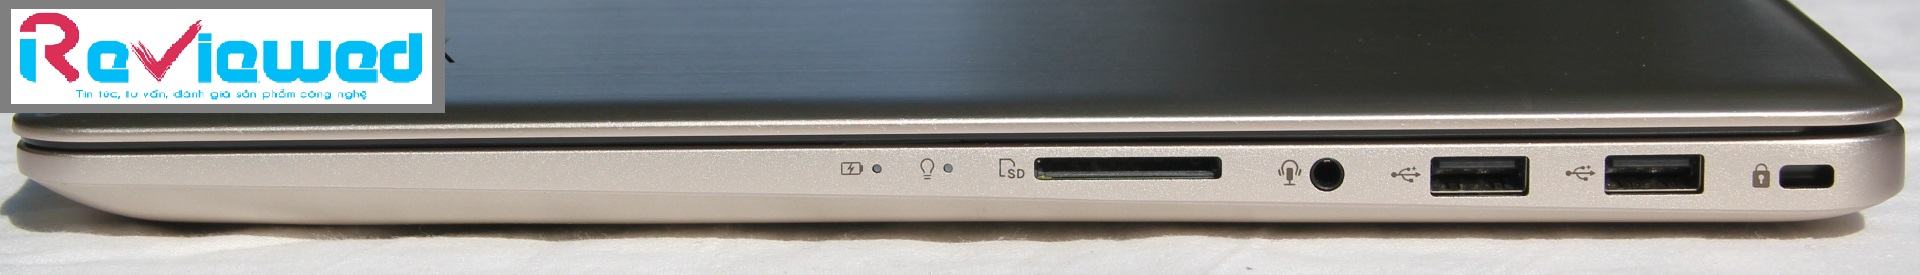 đánh giá laptop Asus VivoBook Pro 15